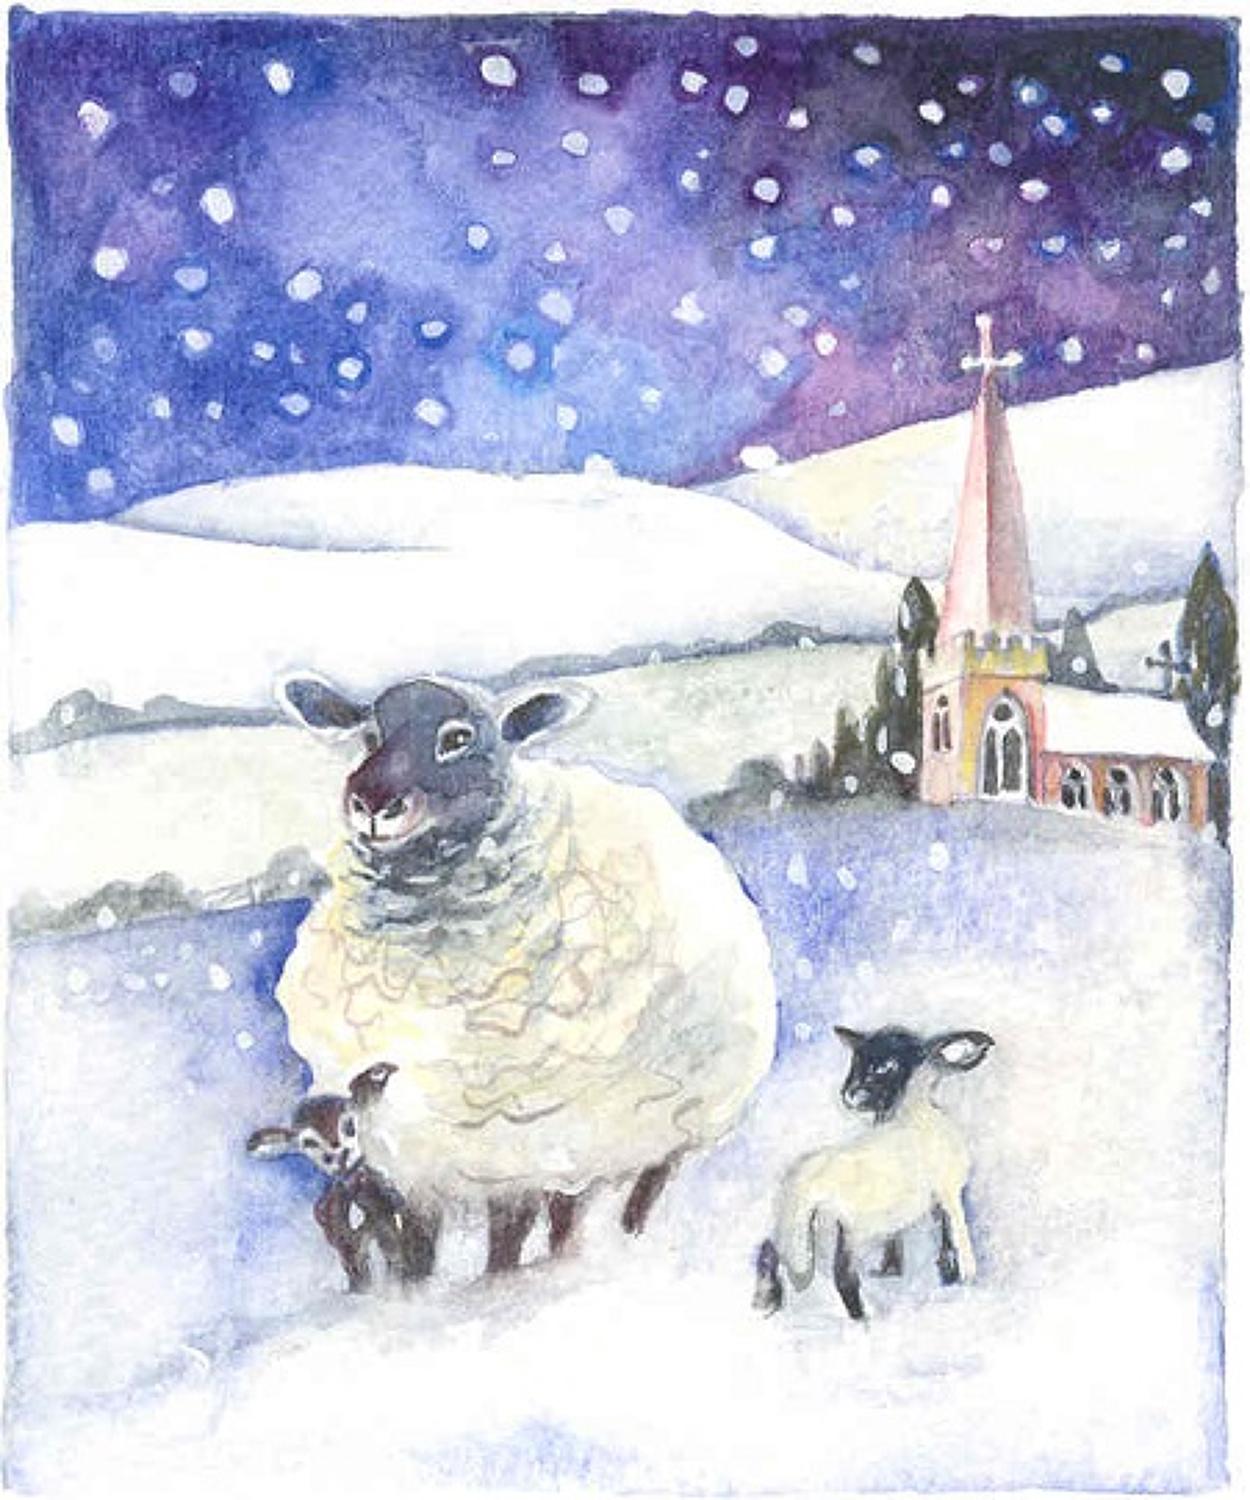 Ewe & lambs in the snow